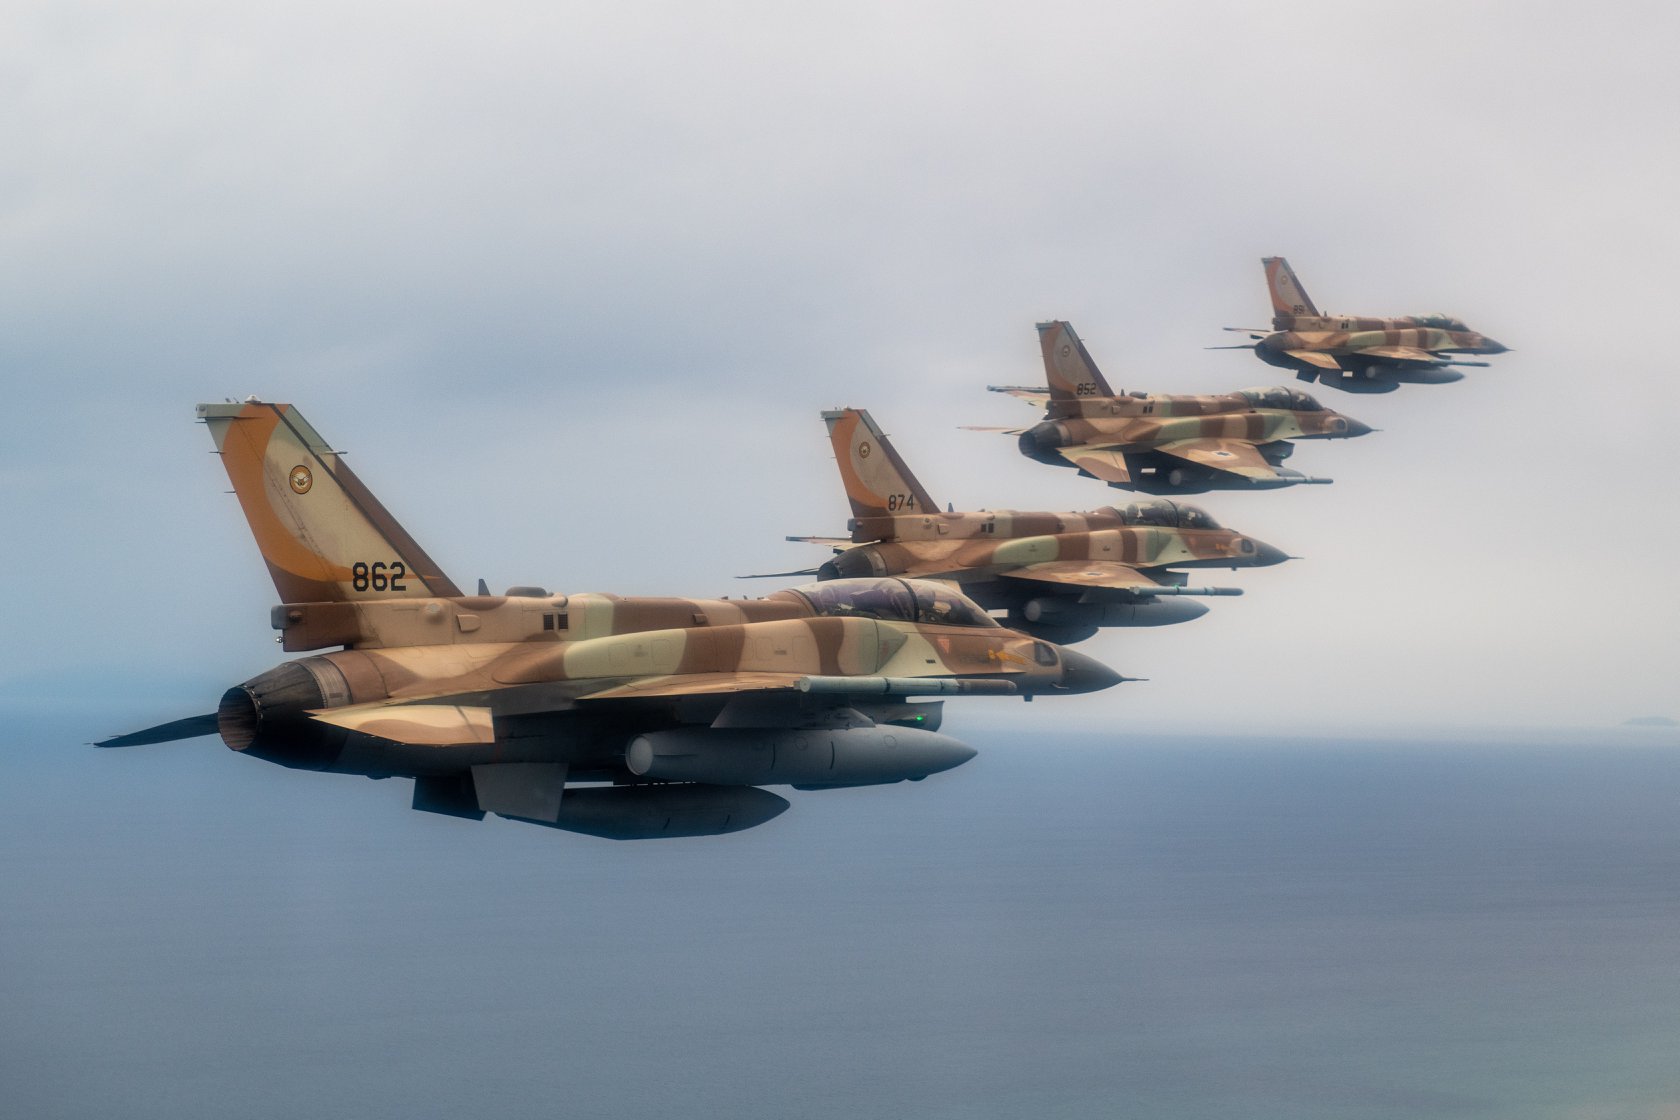 Έρχεται υπογραφή συμφώνου φιλίας Ισραήλ και Τουρκίας; – Ματαίωσε την συμμετοχή της στον  φετινό  «Ηνίοχο» η ισραηλινή Αεροπορία  (upd)